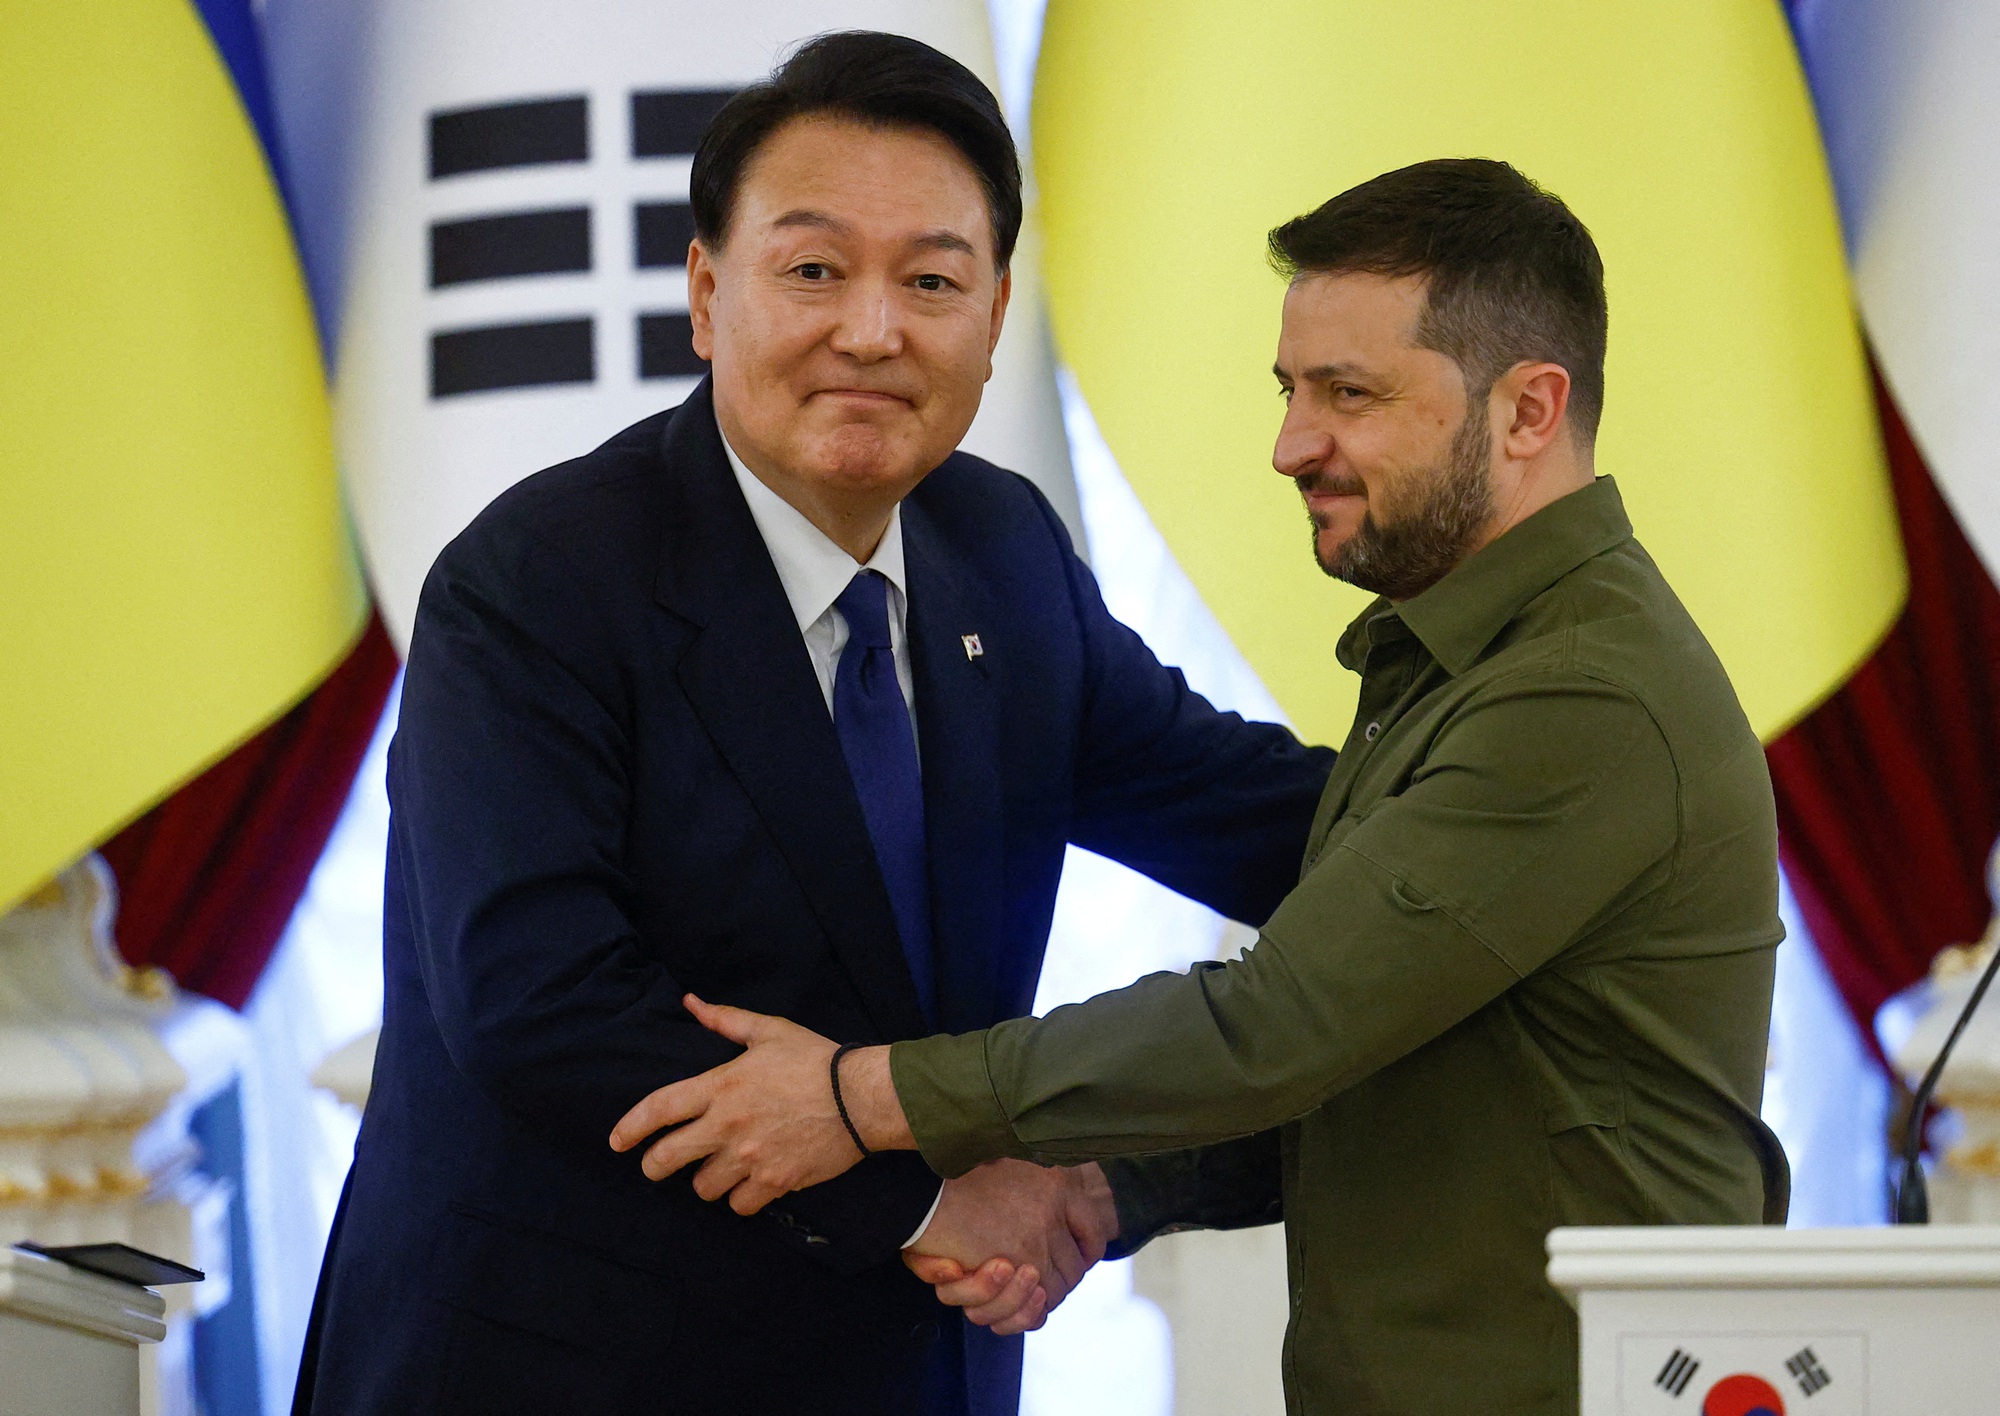 Chùm ảnh: Tổng thống Hàn Quốc và phu nhân thăm Ukraine - Ảnh 6.